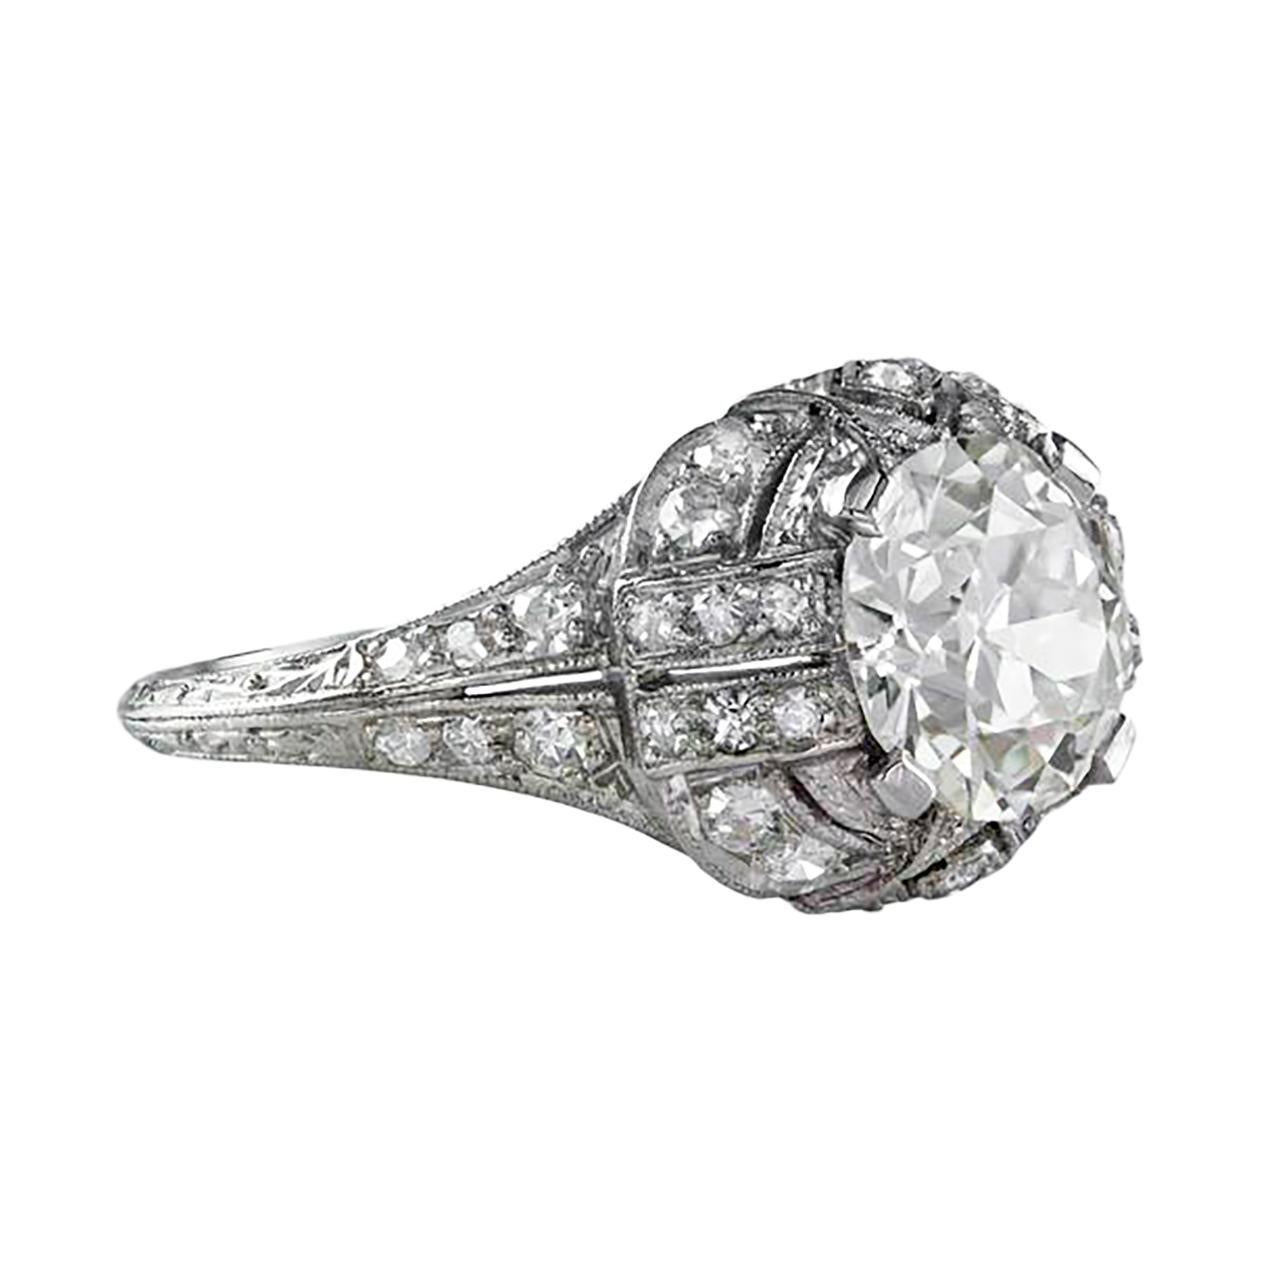 Dieser antike Verlobungsring verfügt über einen brillanten runden Diamanten in der Mitte mit einem Gewicht von 1,97 Karat, der von GIA als Farbe M und Reinheit VS1 zertifiziert wurde und in einer vierzinkigen Platinfassung gefasst ist. Akzentuiert